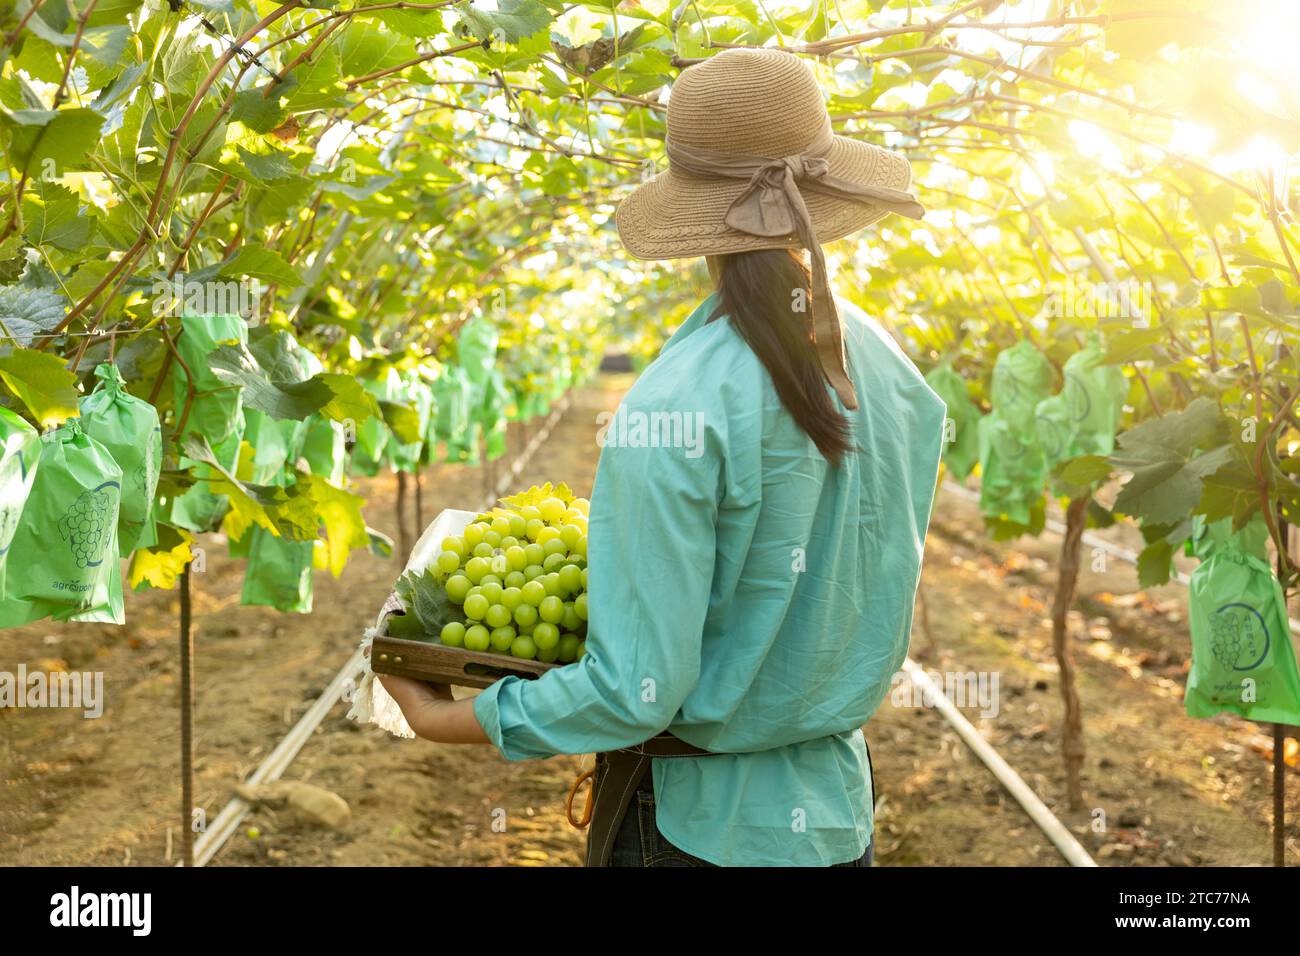 Rückansicht einer jungen Landwirtin, die nach vorne blickt und einen Korb voller Trauben hält, die sie geerntet hat Stockfoto